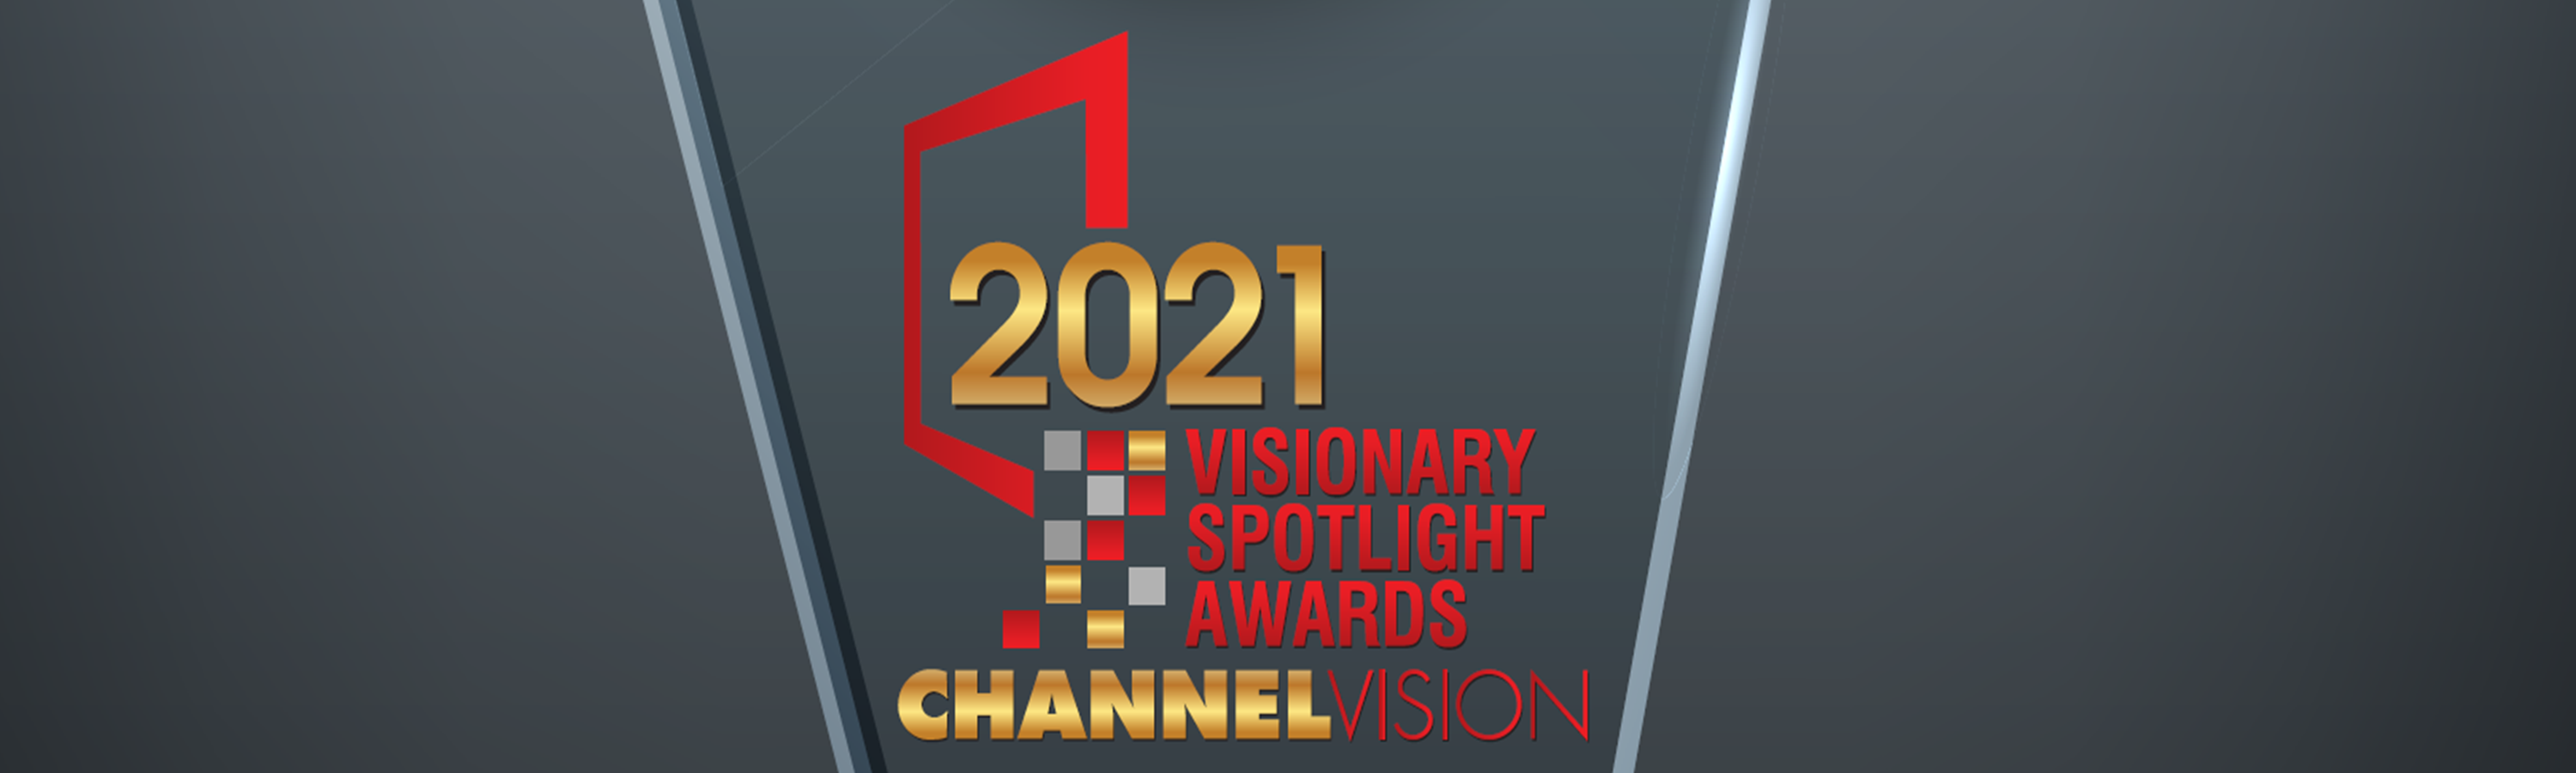 2021 Channel Vision Visionary Spotlight Award